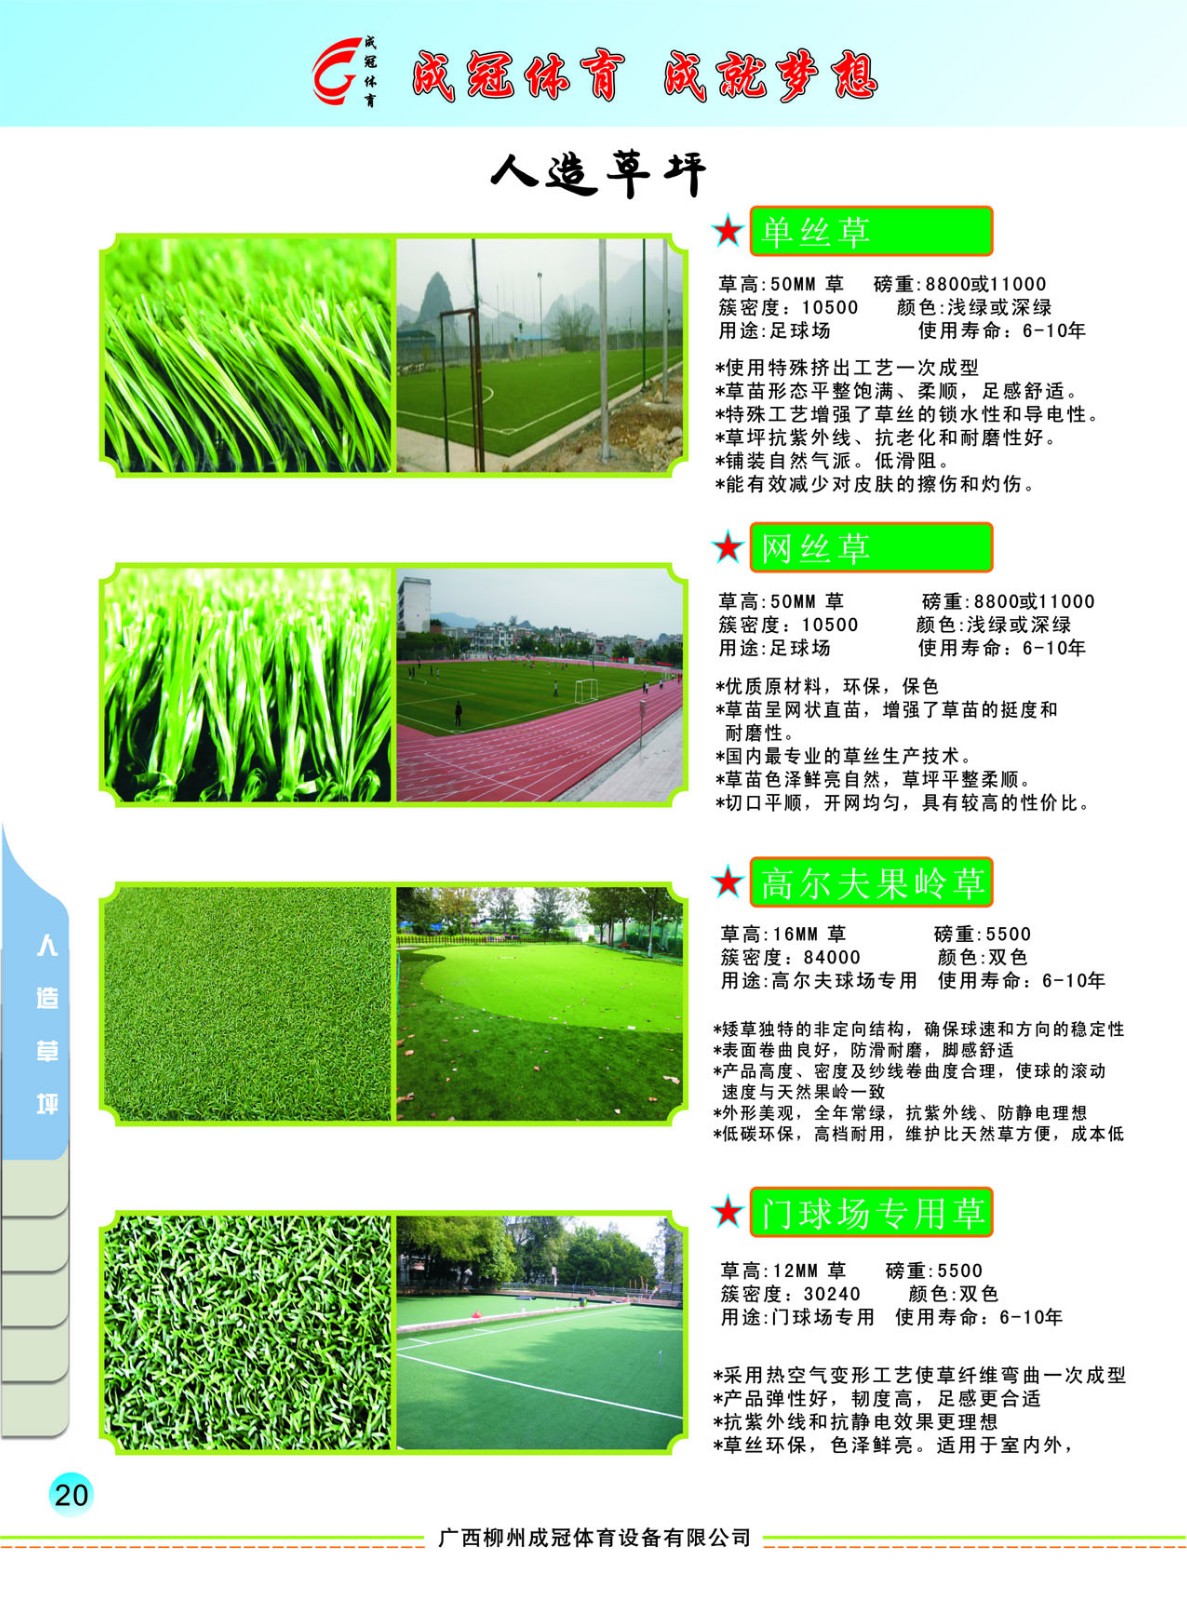 人工草坪分类